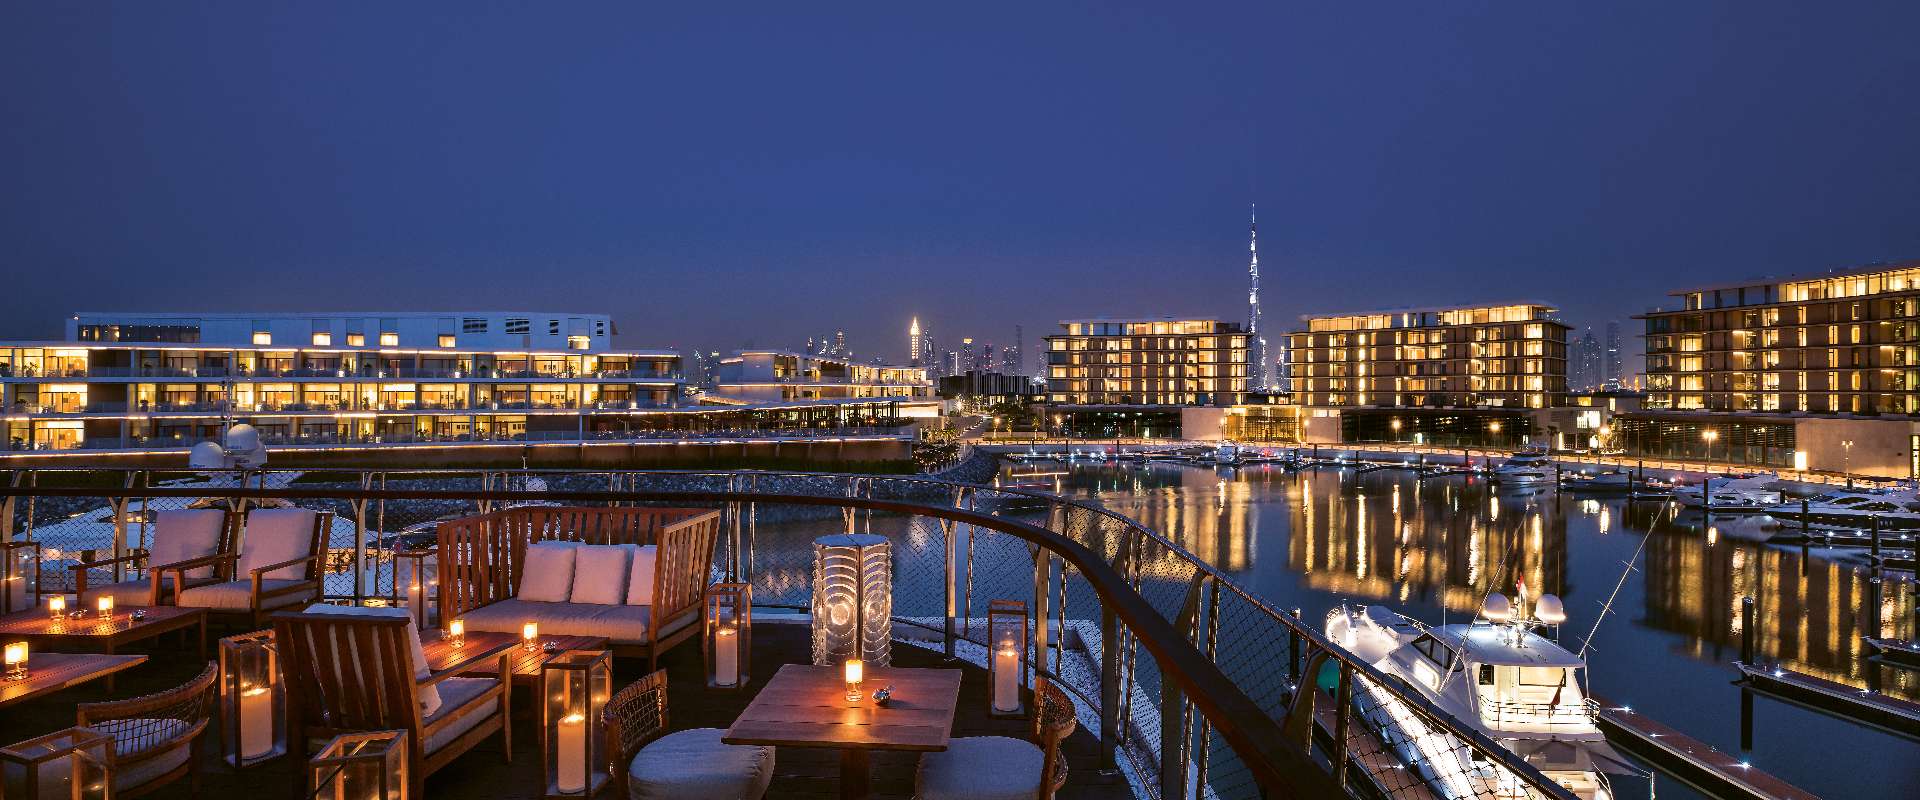 Bvlgari Resort Dubai - Marina & Yacht Club Members Lounge